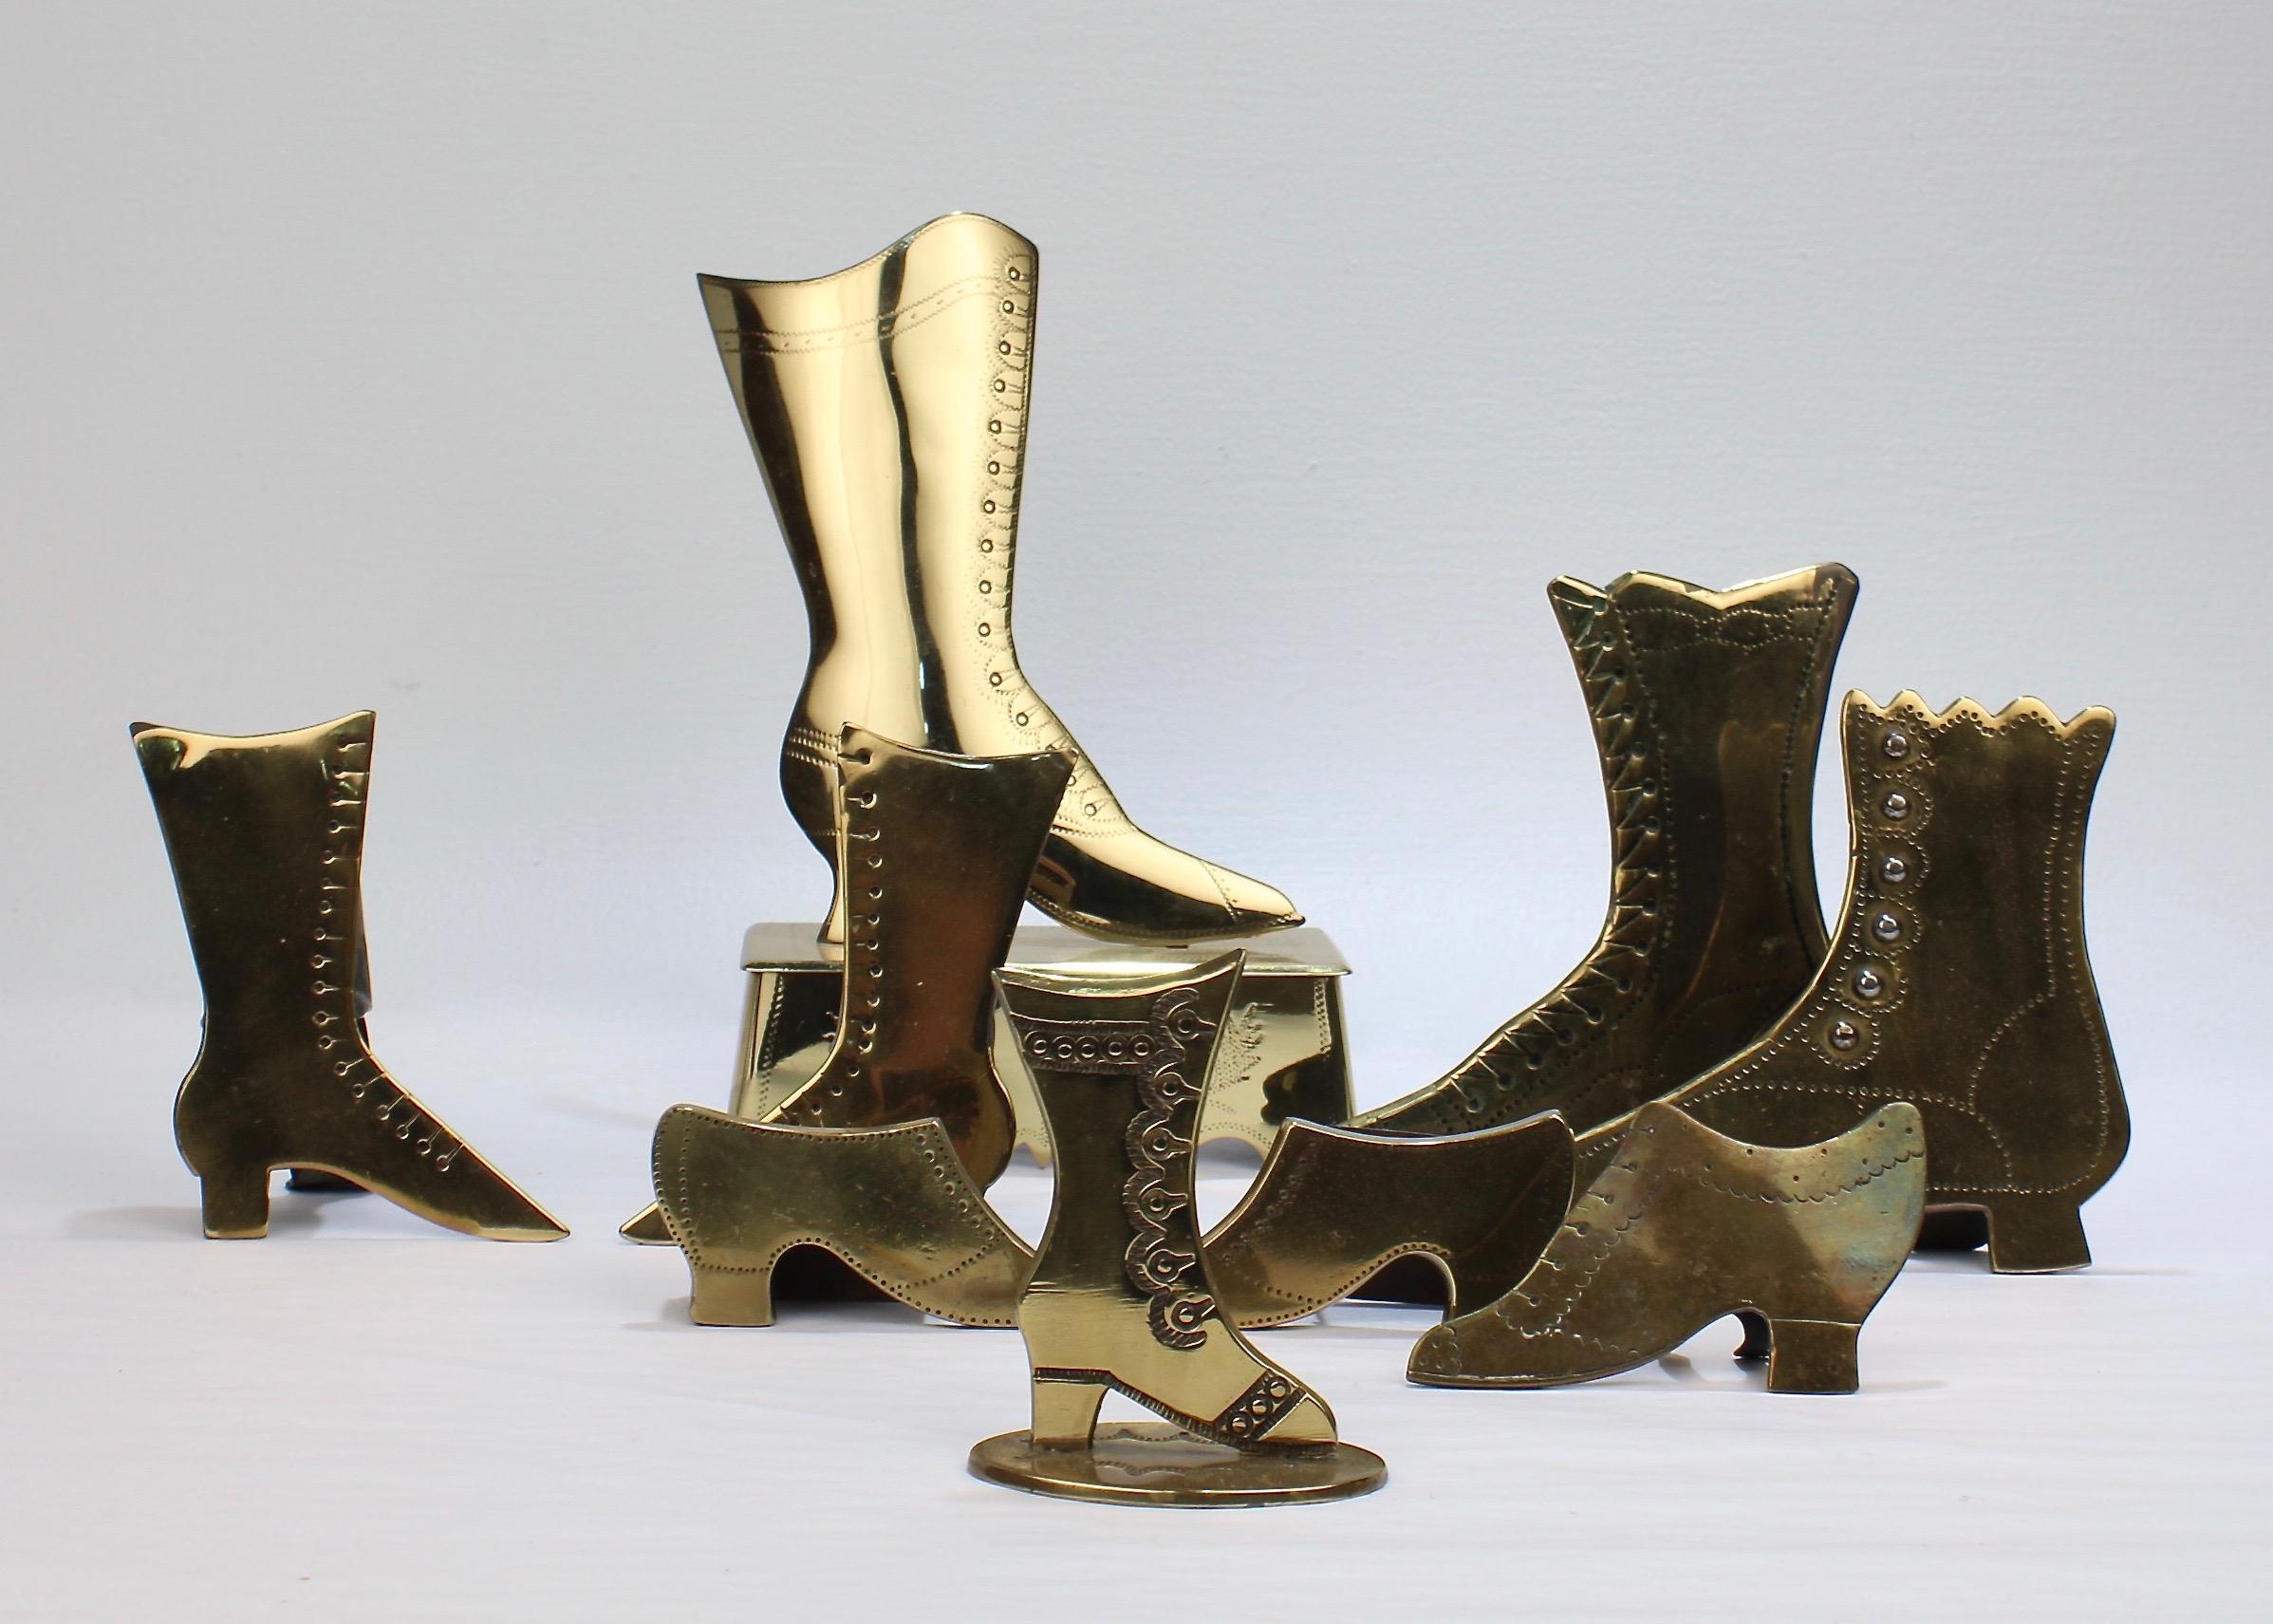 Collection de 9 ornements de cheminée en laiton pour chaussures.

Chacun a la forme d'une botte ou d'une chaussure de femme. 

Certains ont des boutons appliqués et des décorations gravées. 

La plupart d'entre eux sont équipés d'un support pour